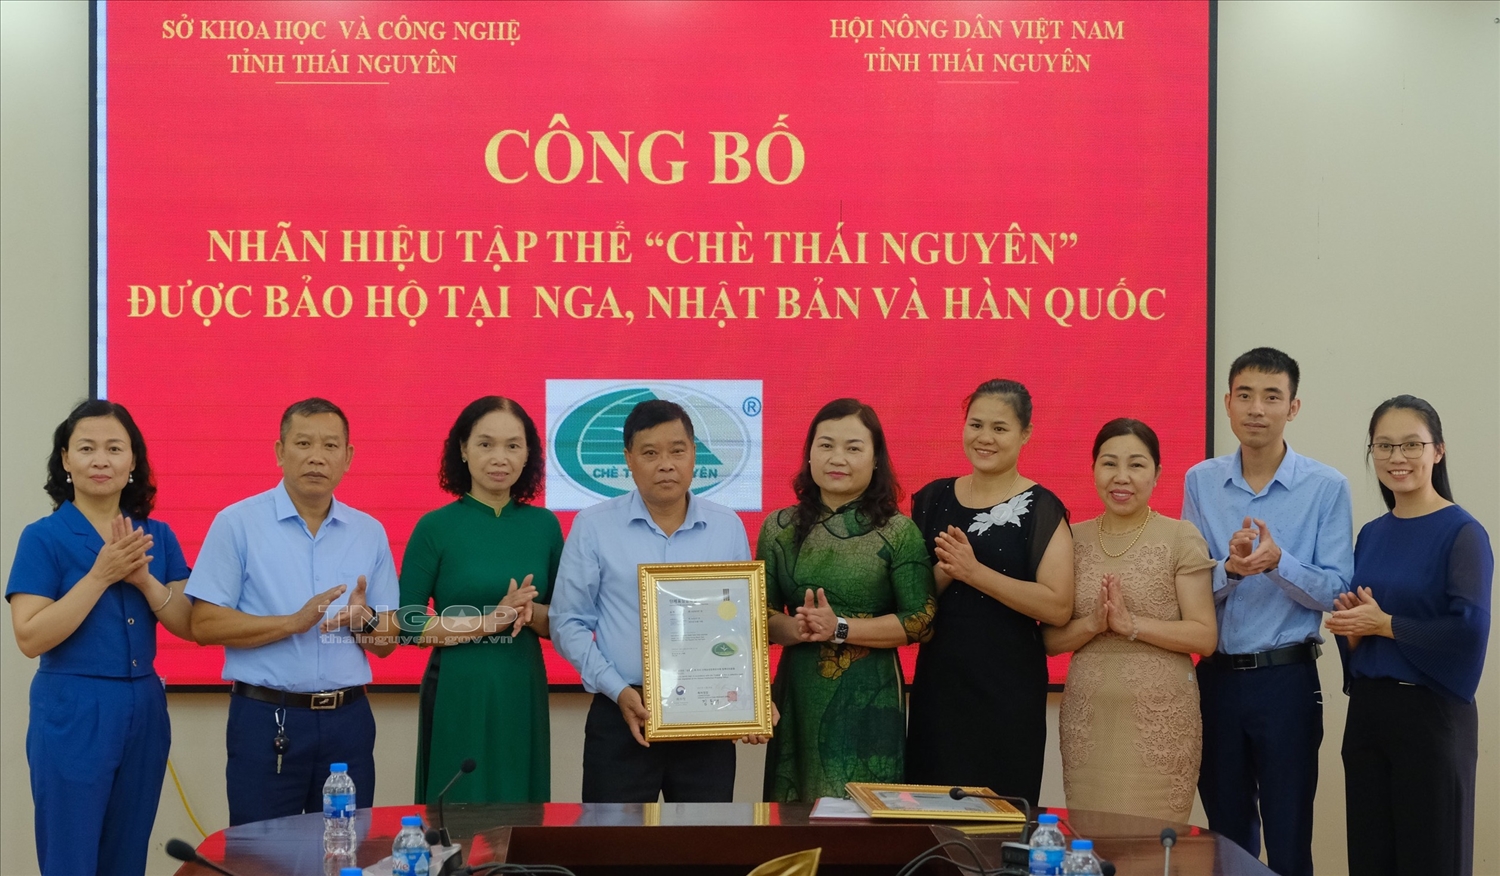 Đại diện Hội nông dân tỉnh đón nhận Giấy chứng nhận đăng ký nhãn hiệu tập thể Chè Thái Nguyên tại Nga, Nhật Bản và Hàn Quốc. Ảnh: NN